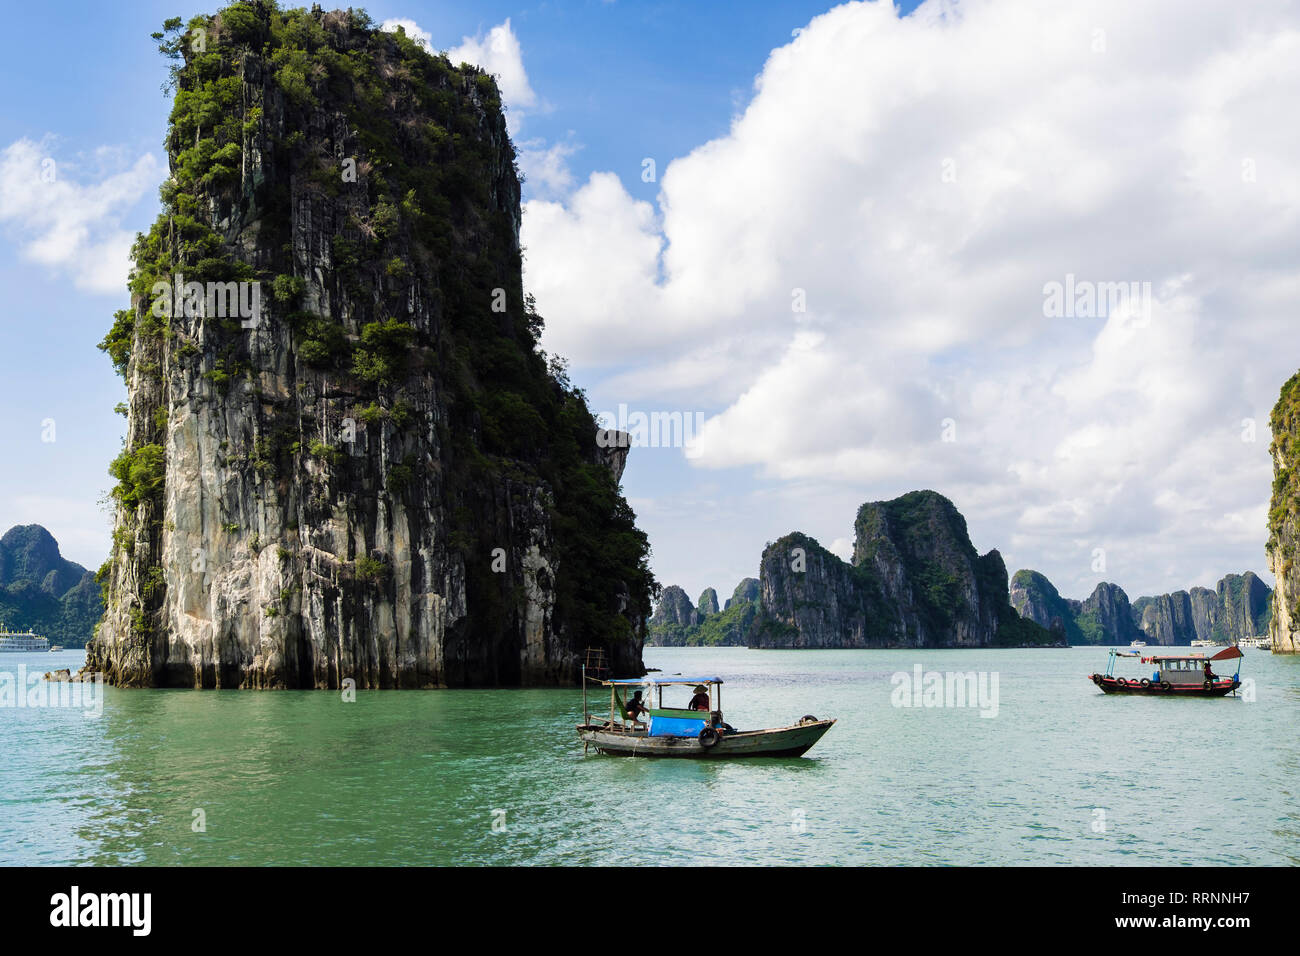 Tradizionale vietnamita la pesca barche a vela tra roccia calcarea isole nella Baia di Ha Long nel Mare della Cina del Sud. Quảng Ninh, Vietnam, sud-est asiatico Foto Stock